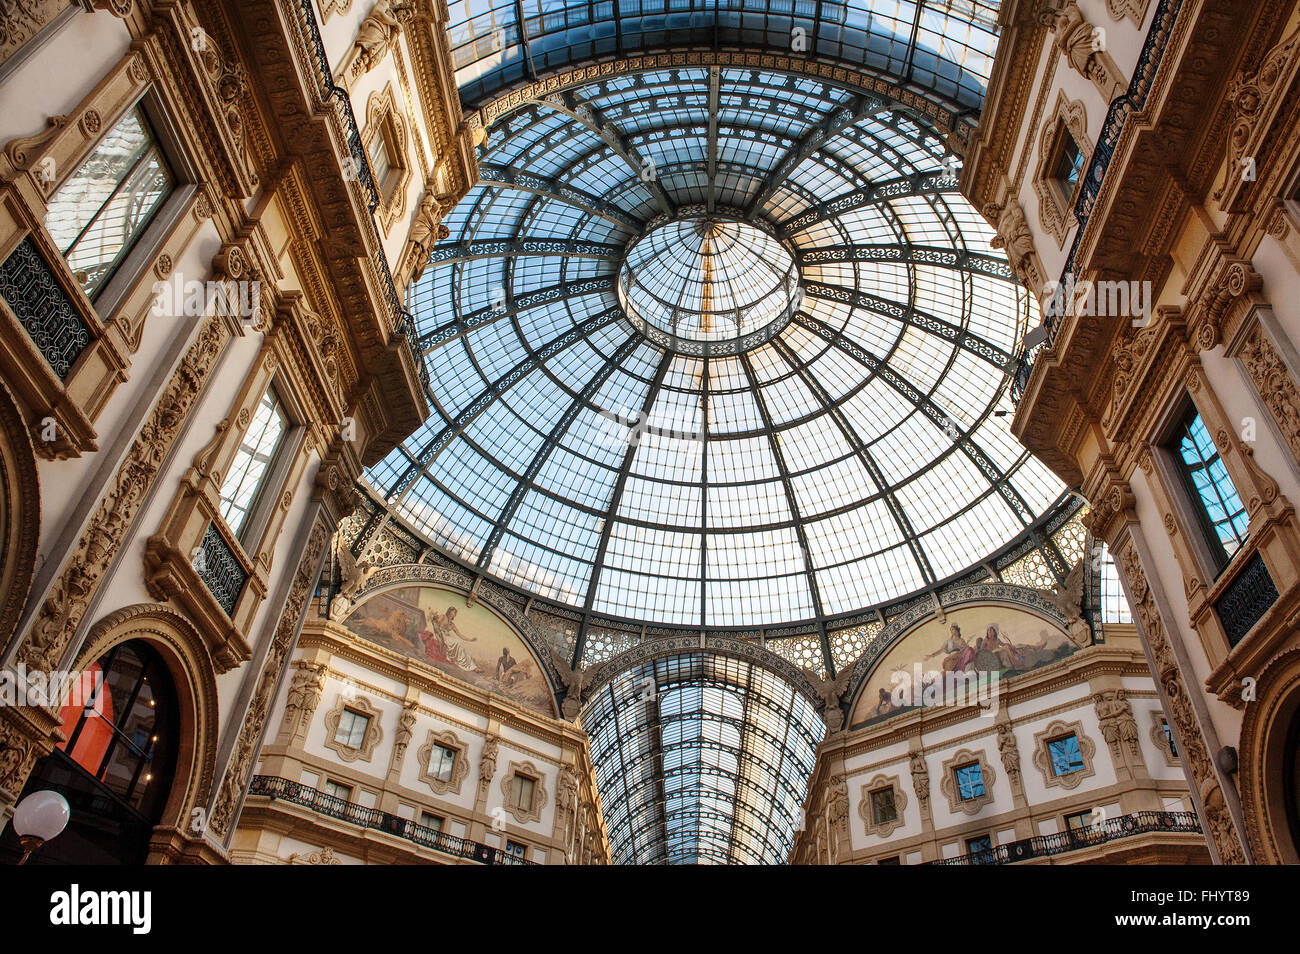 Low angle view vers un dôme circulaire et des fenêtres dans l'Vittorio Emanuele Milan shopping mall interior Banque D'Images